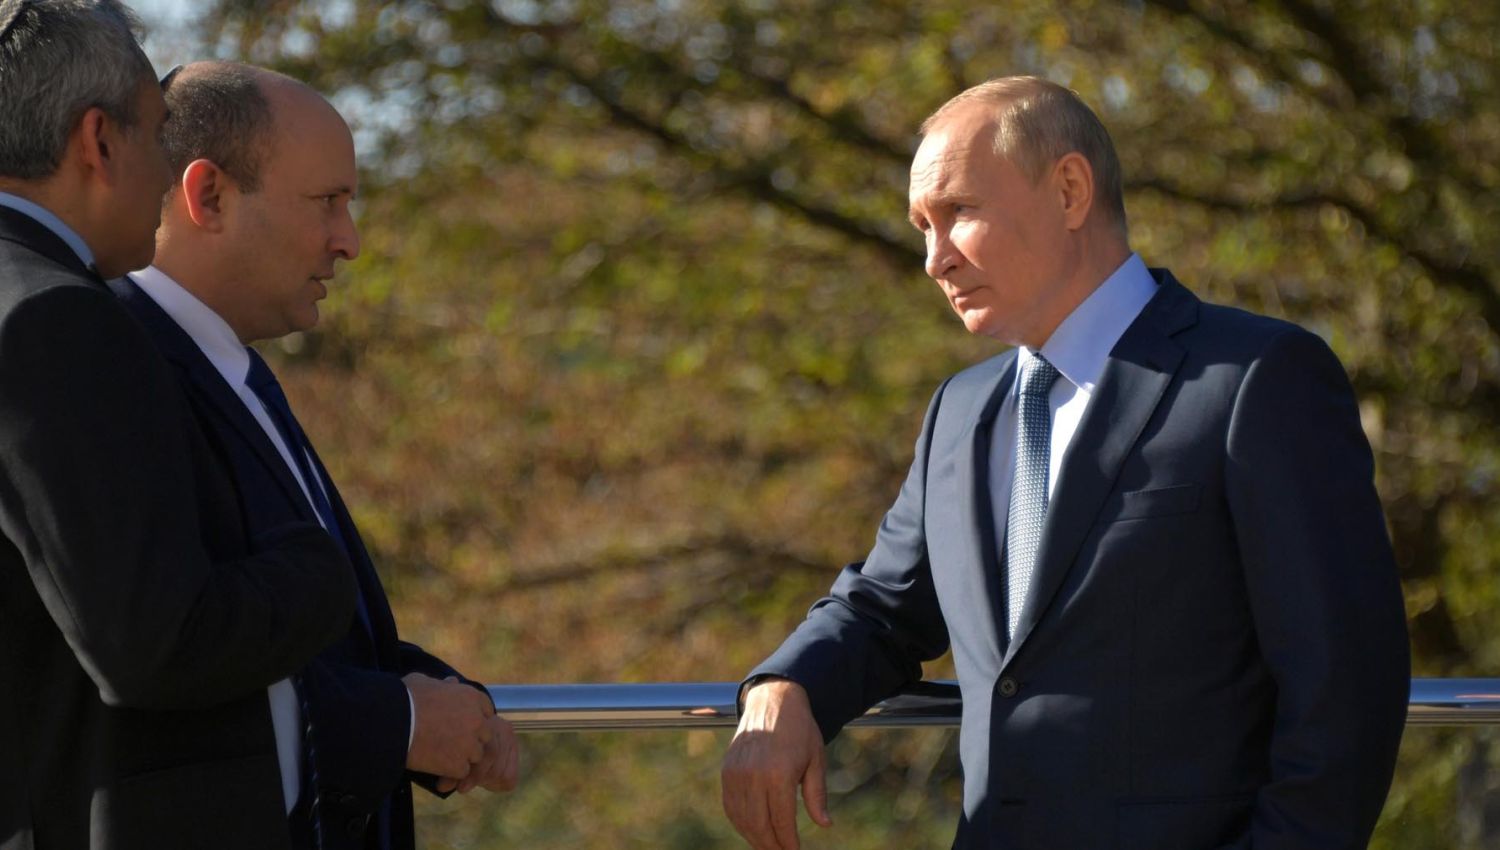 هل نشهد تغيراّ في العلاقة ما بين روسيا والكيان المؤقت؟